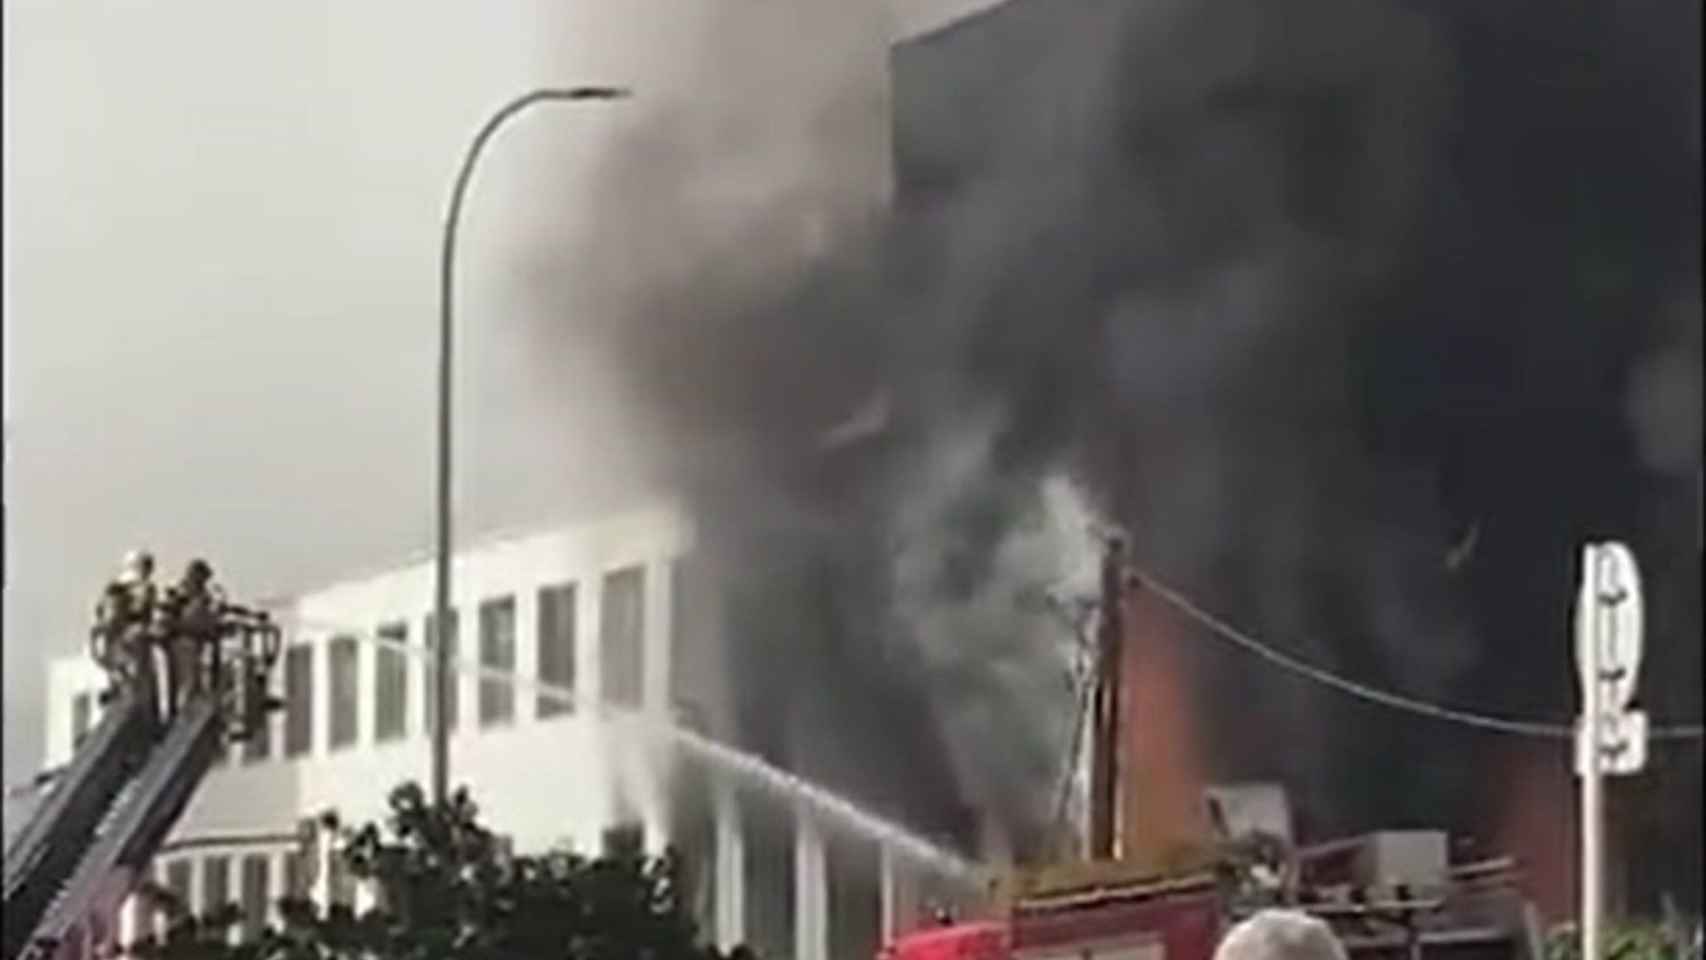 Aparatoso incendio en una fábrica de cremalleras de Rubí / BOMBERS DE LA GENERALITAT